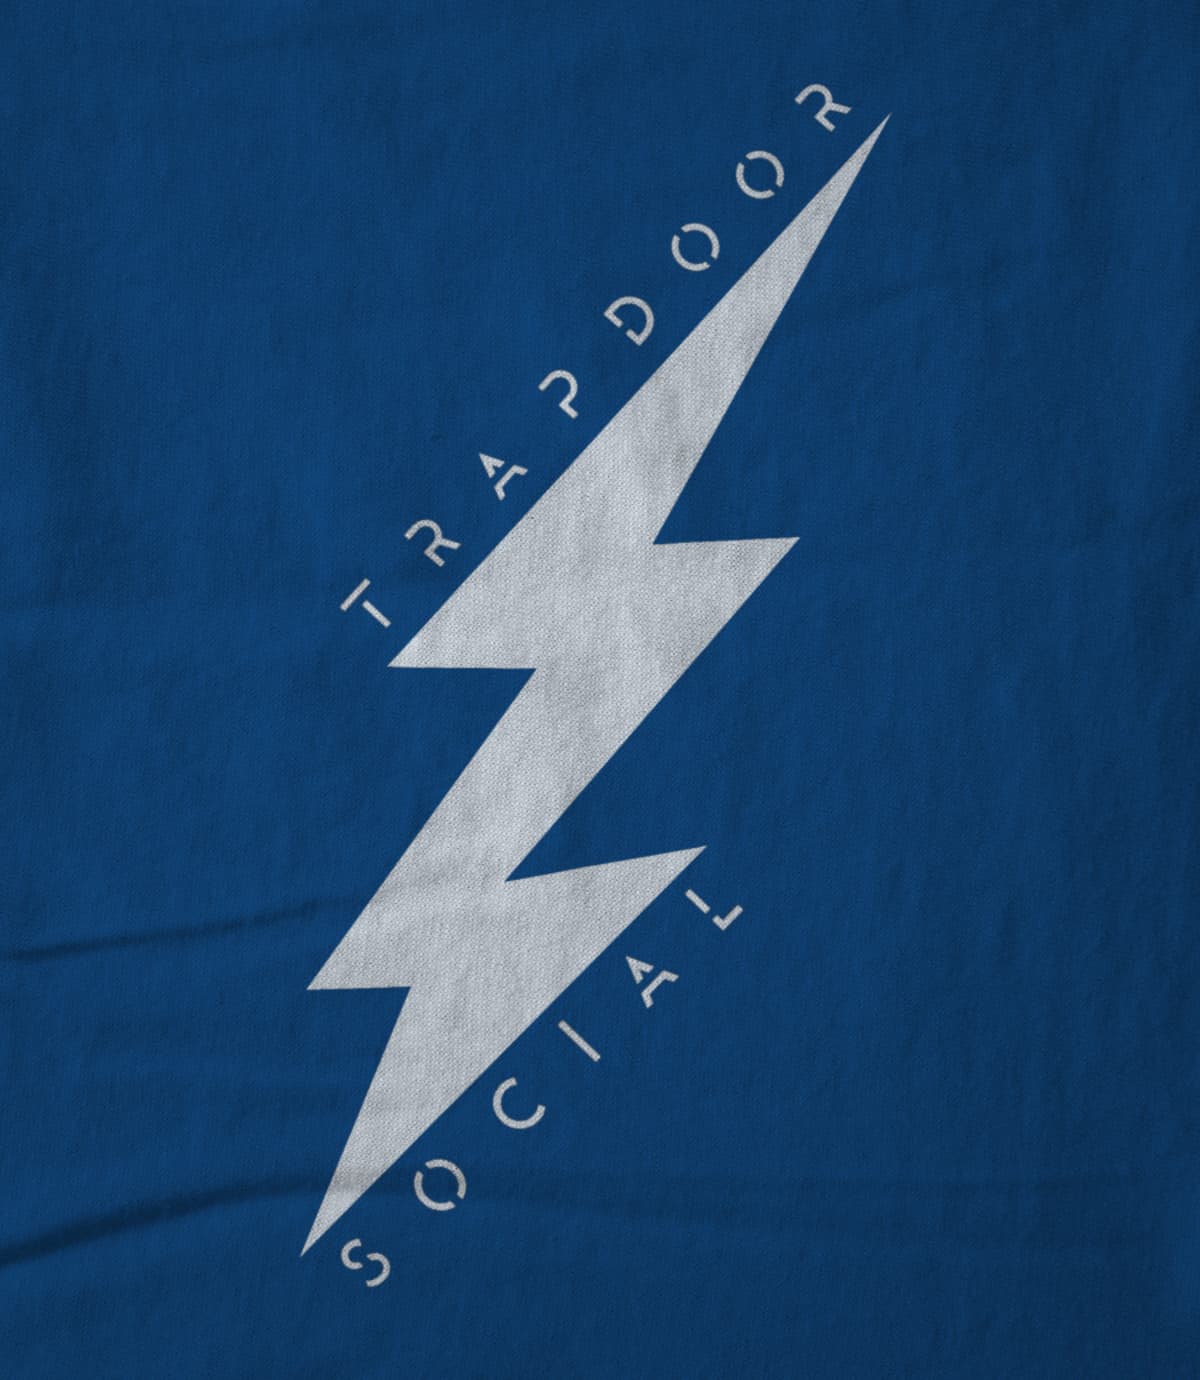 Trapdoor social lightning bolt 1476752441